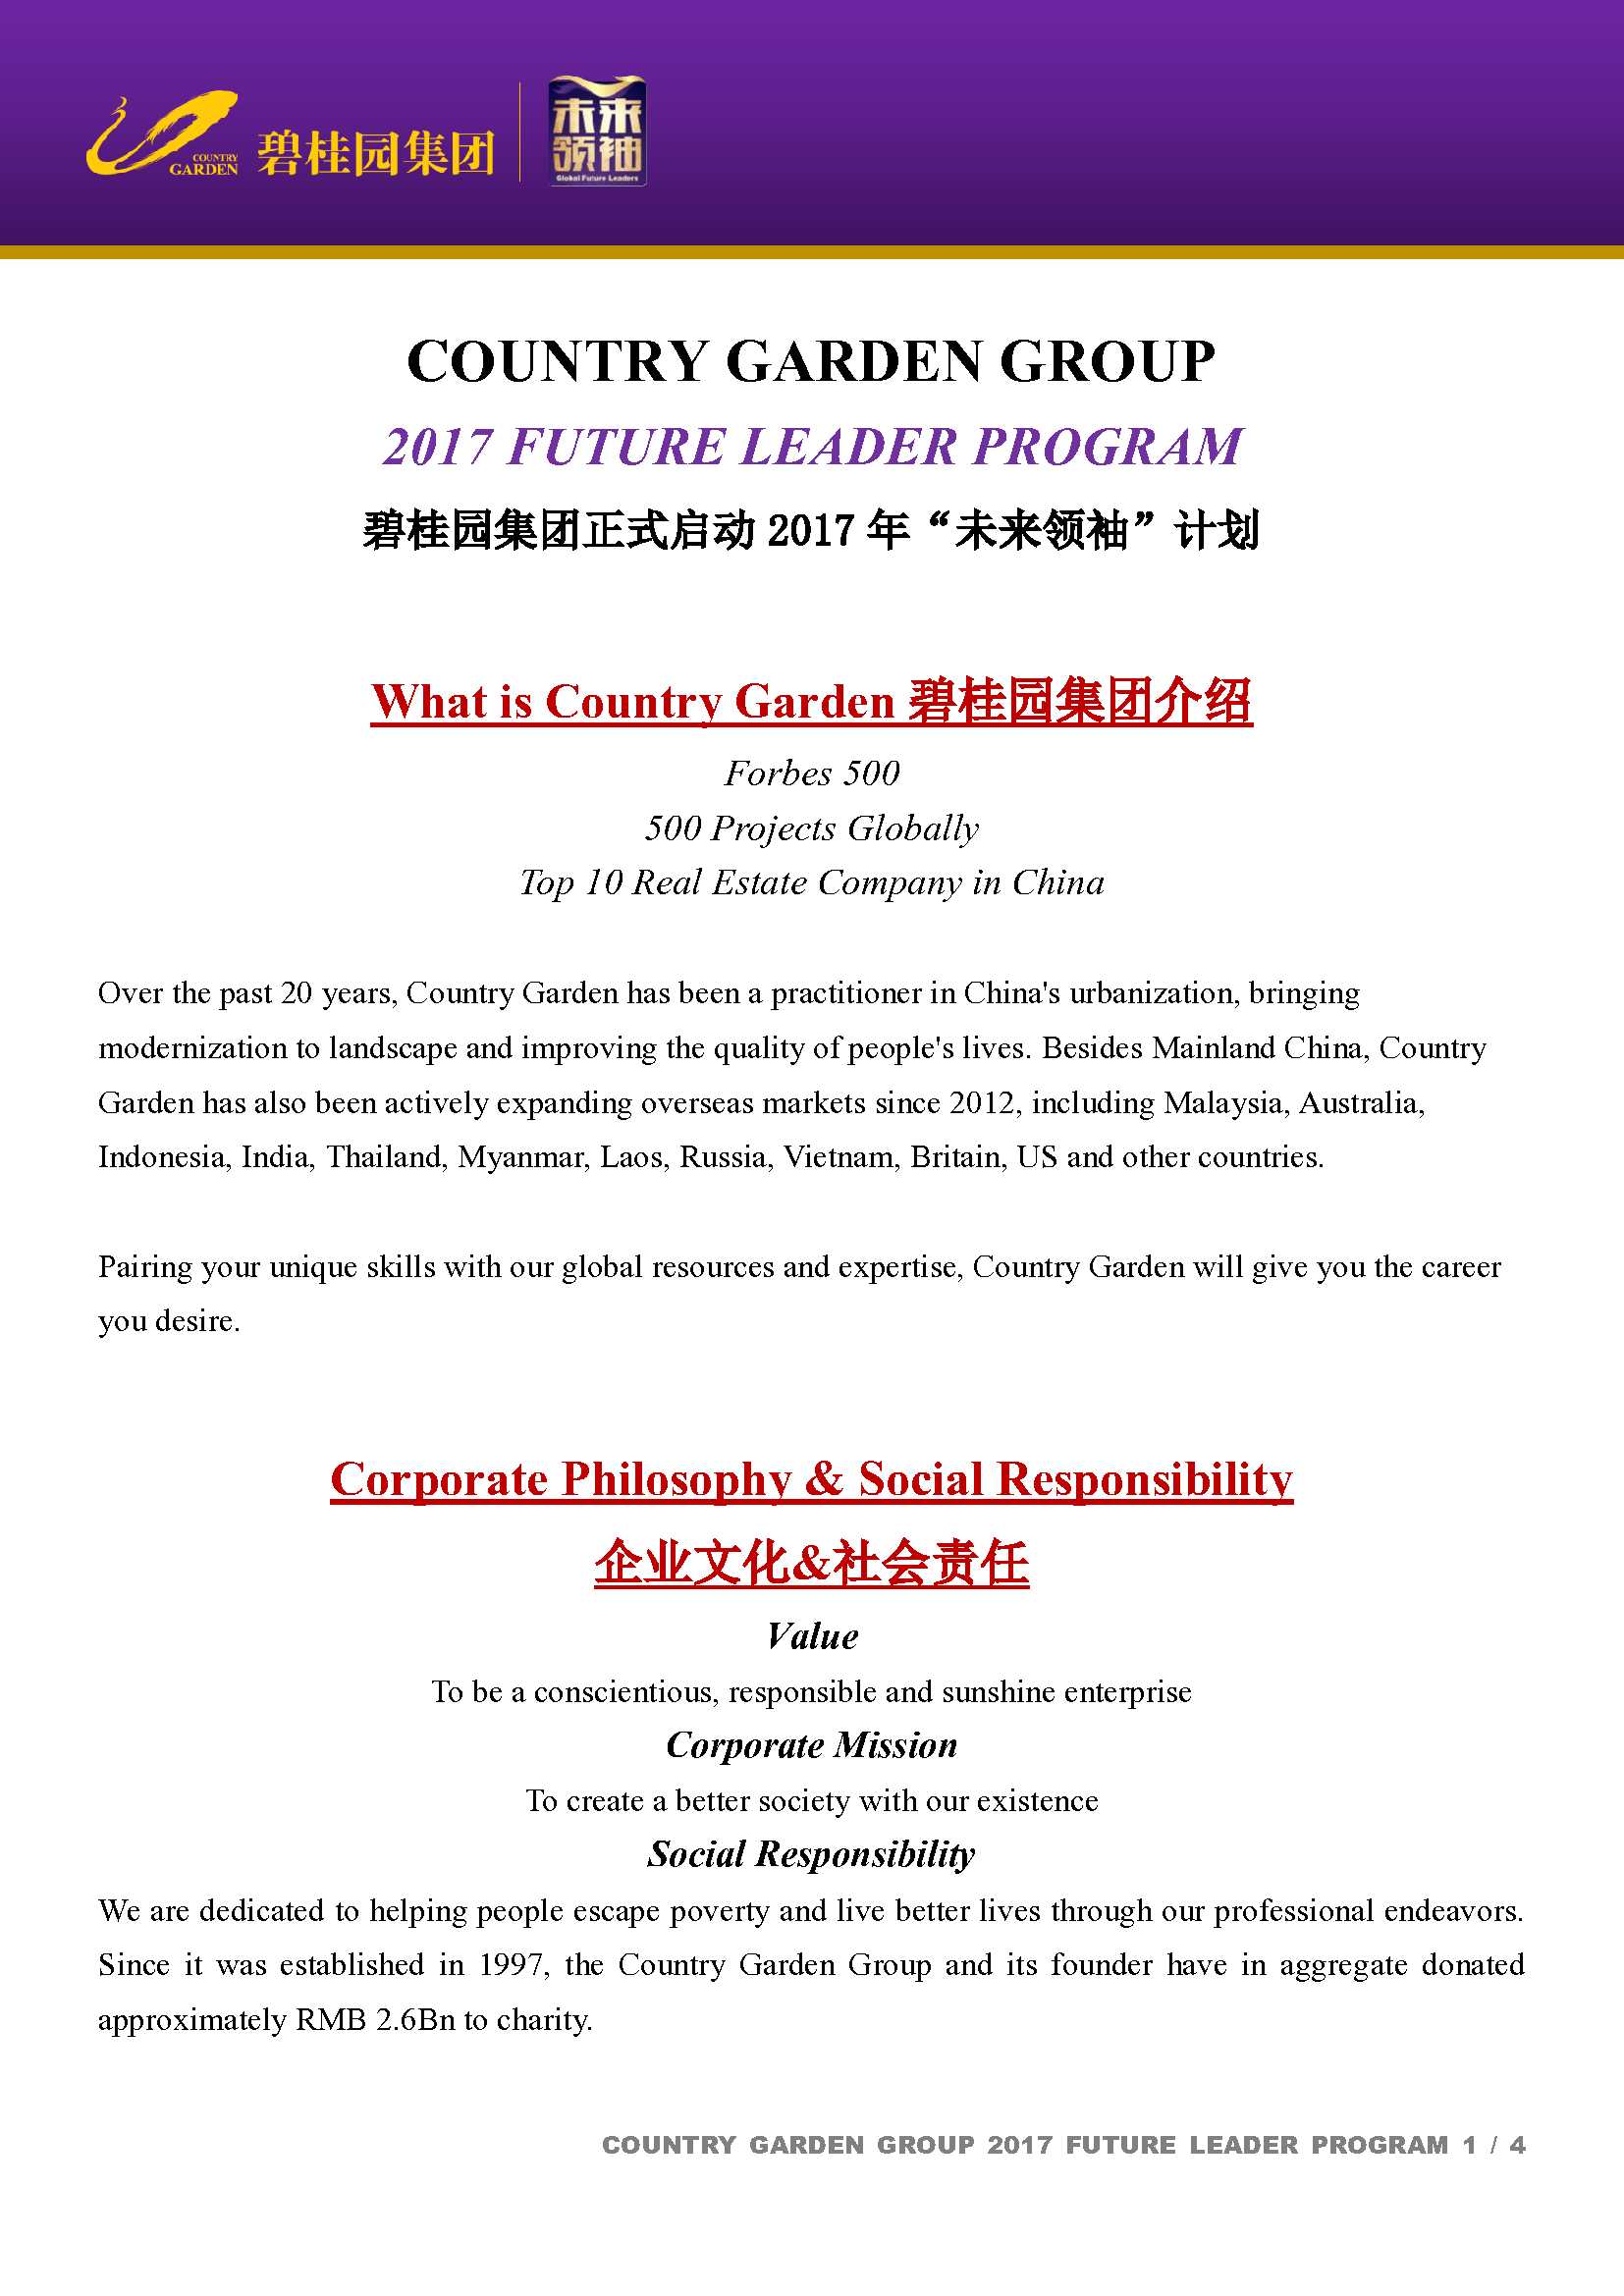 2017 Country Garden Group-Future Leader Program-UK_1.jpg